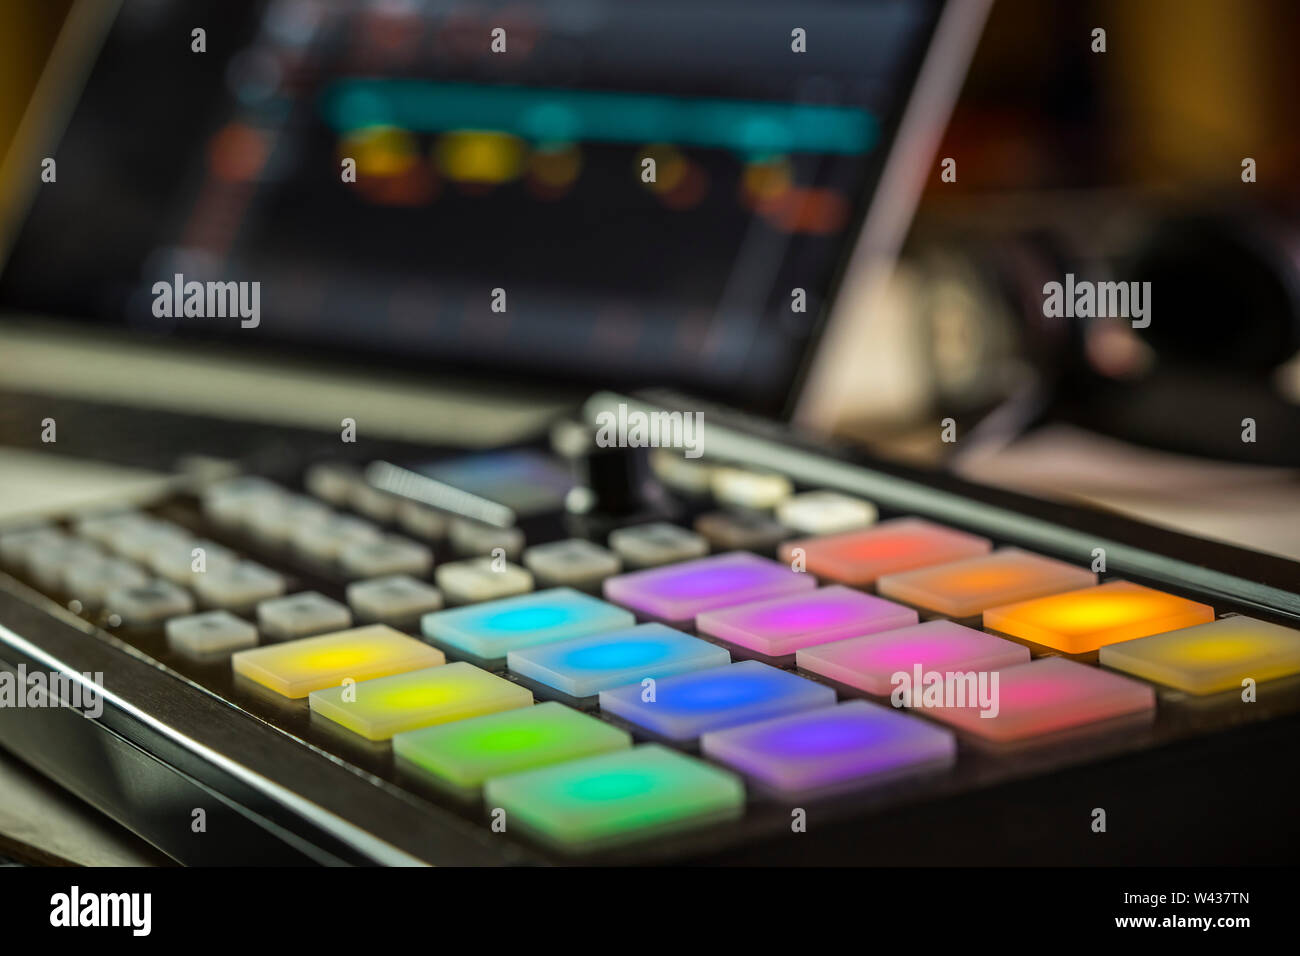 Musica elettronica produzione.Closeup di piazzole di LED su un Maschine Mikro controller midi con laptop Foto Stock